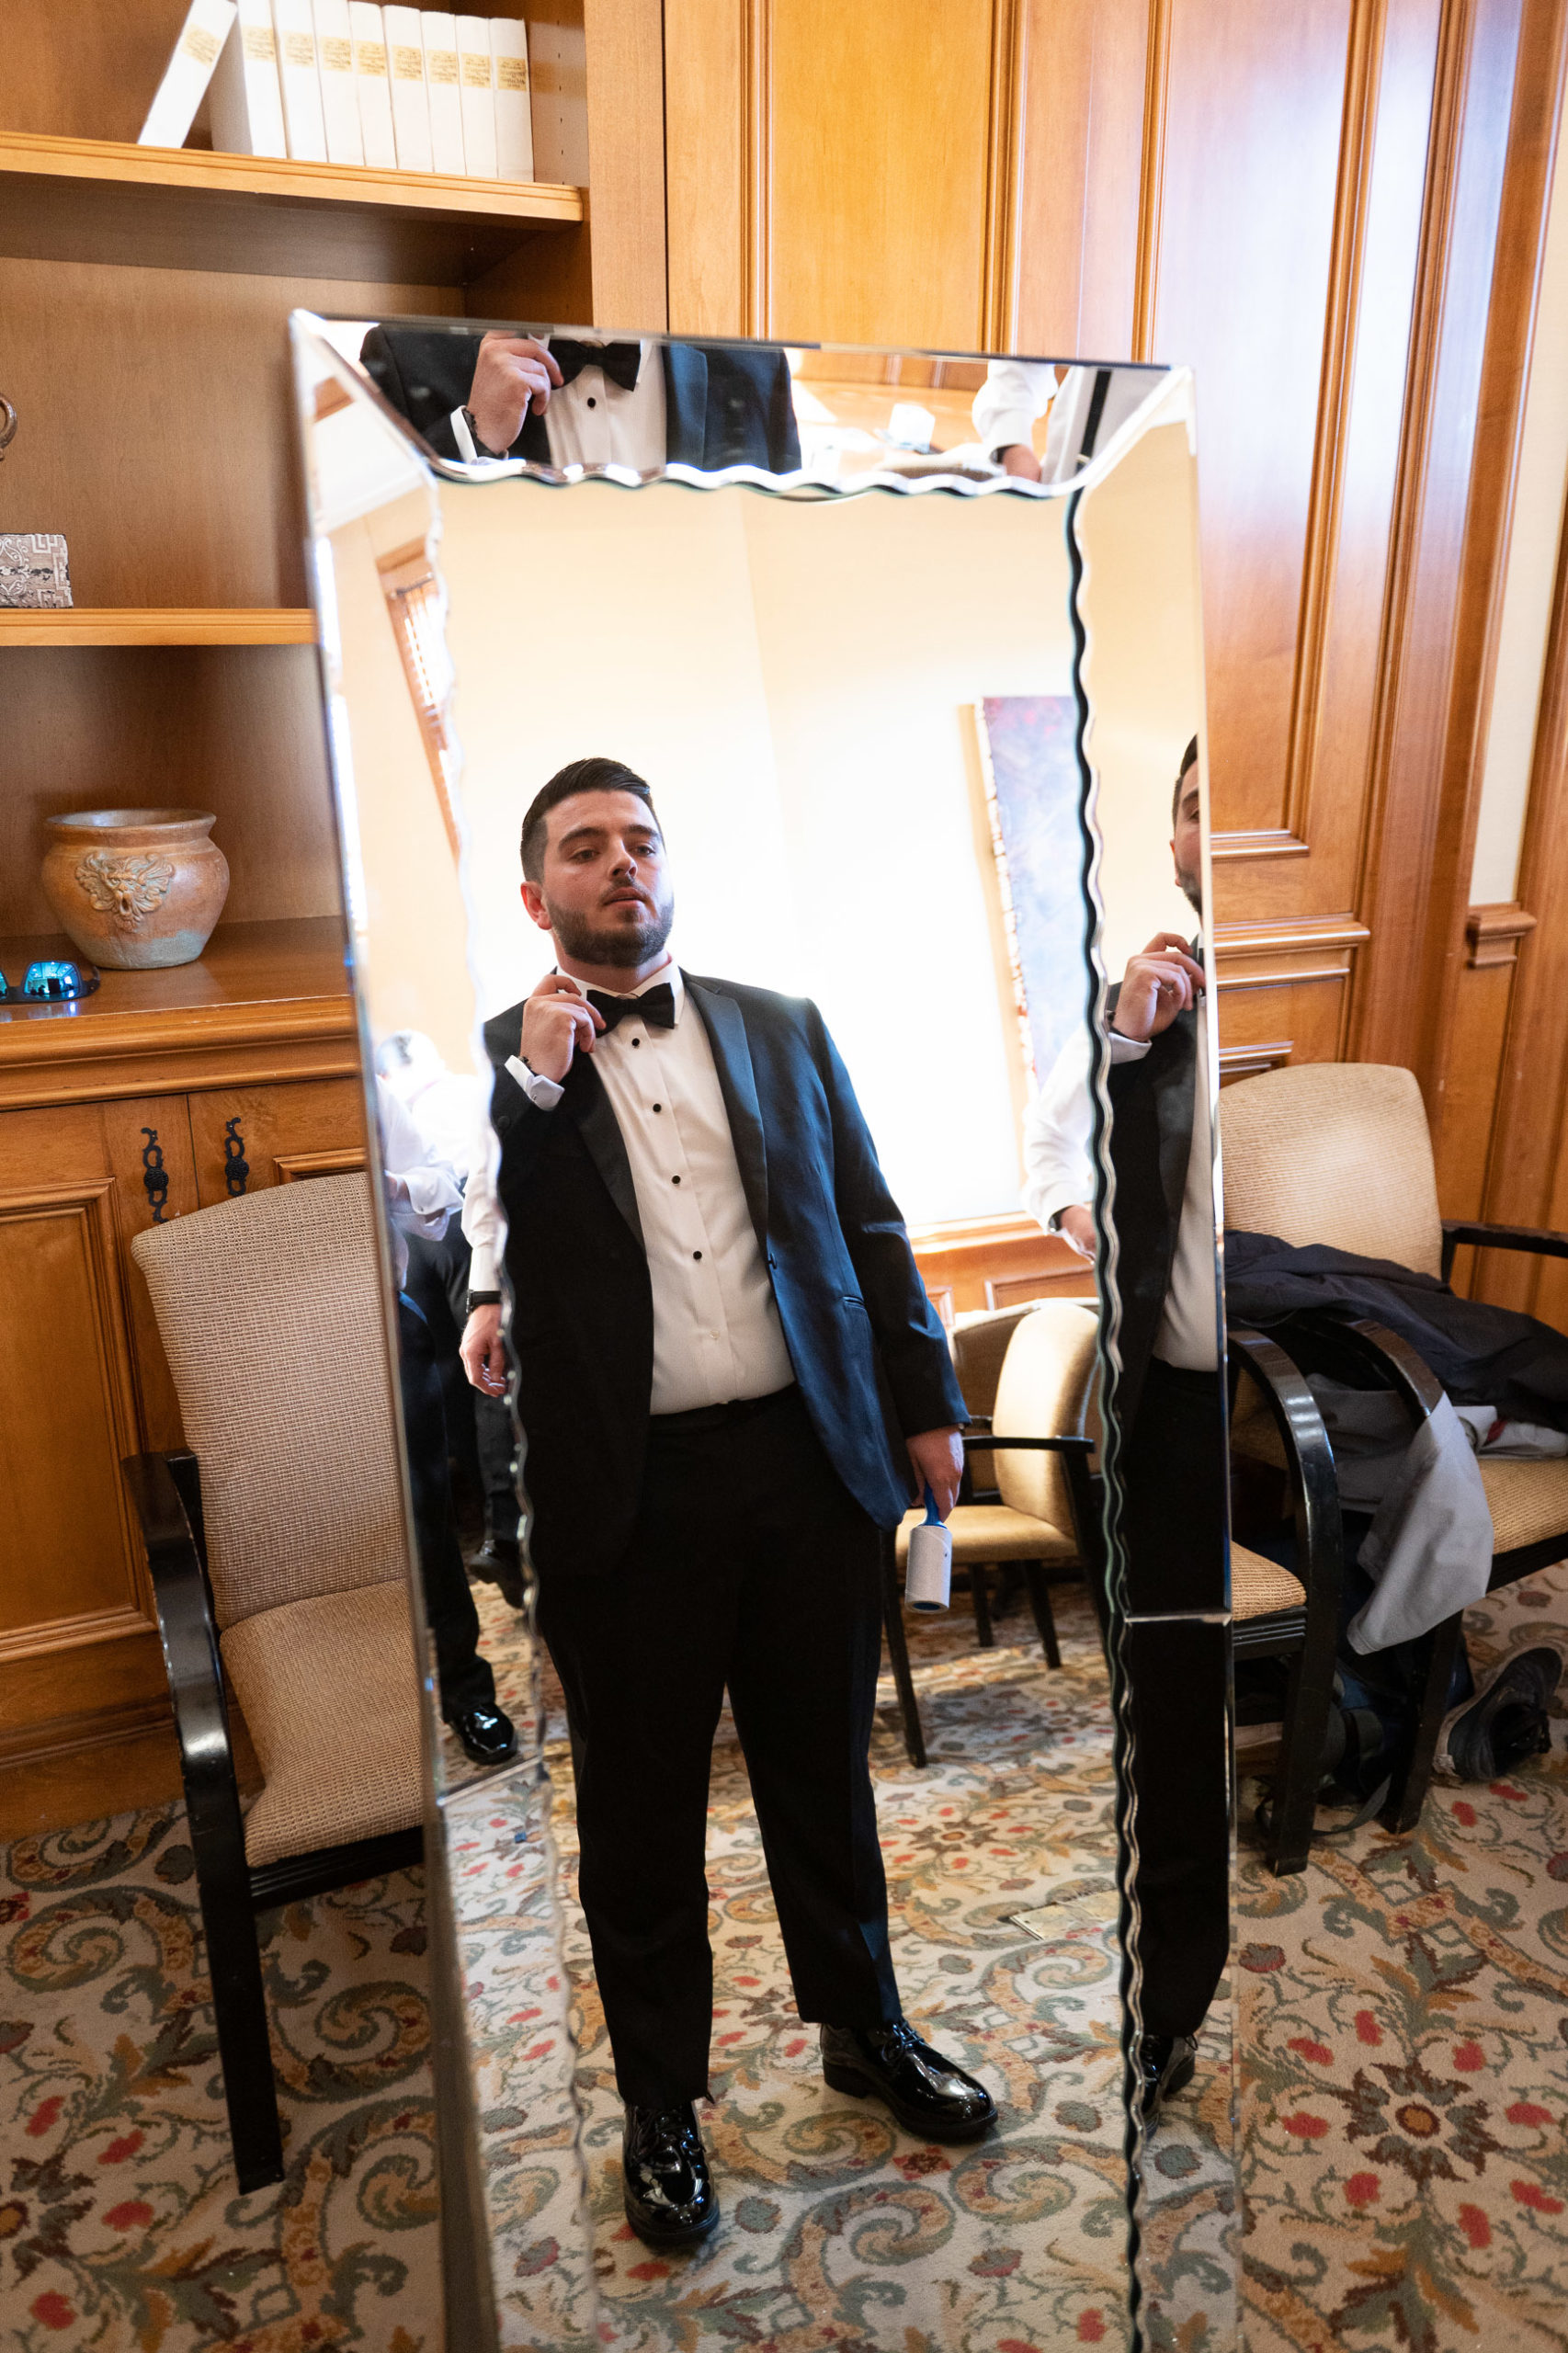 groom adjusting tie in mirror